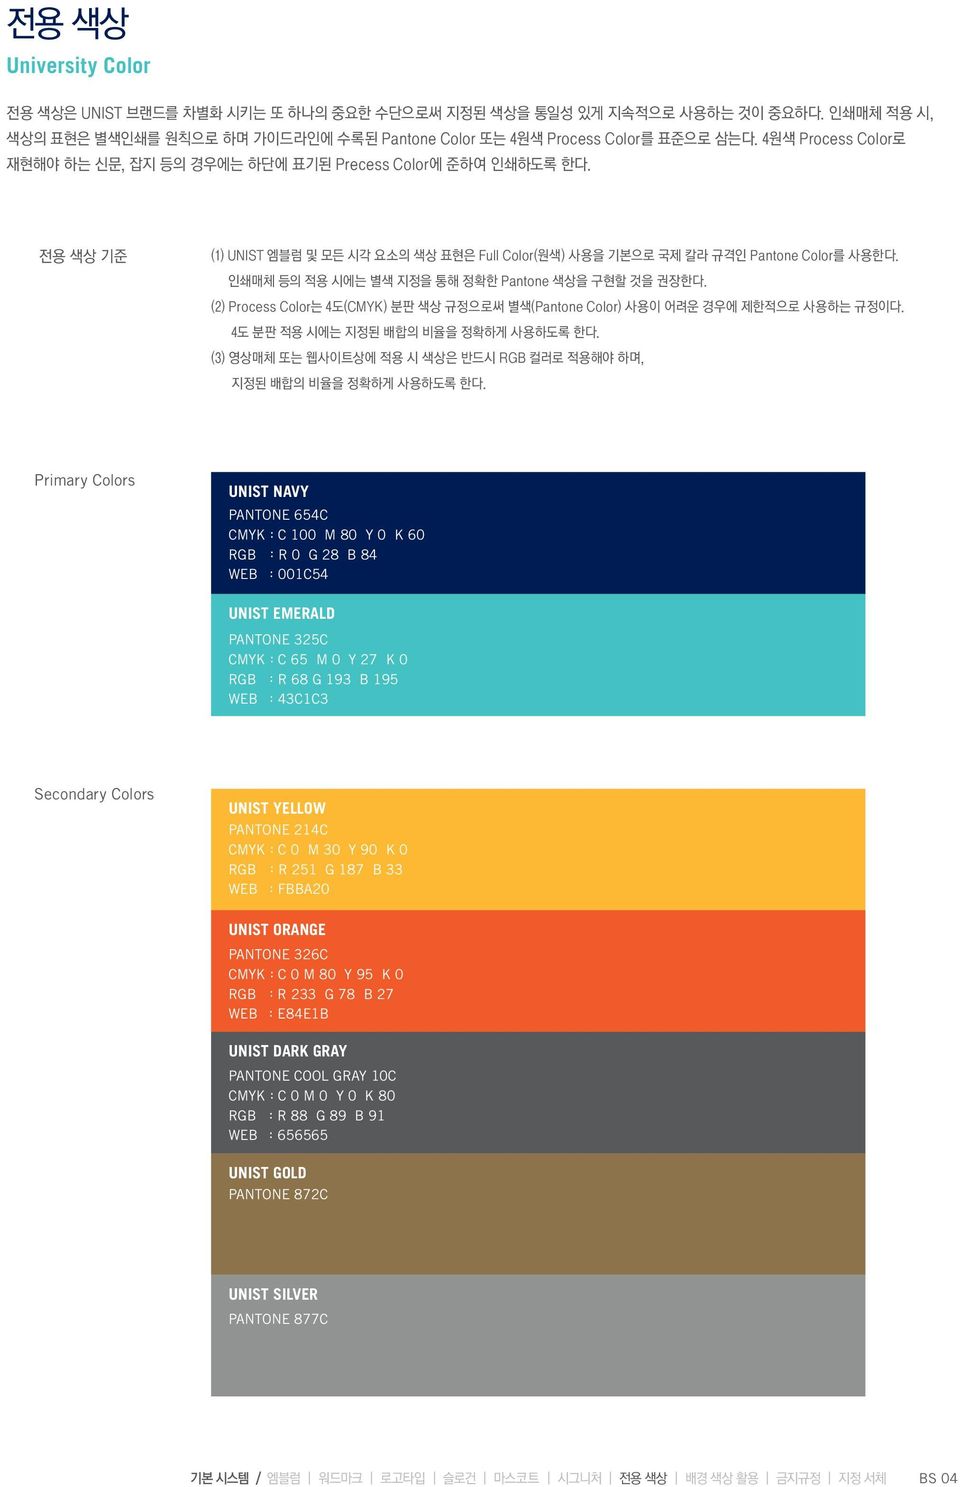 인쇄매체 등의 적용 시에는 별색 지정을 통해 정확한 Pantone 색상을 구현할 것을 권장한다. (2) Process Color는 4도(CMYK) 분판 색상 규정으로써 별색(Pantone Color) 사용이 어려운 경우에 제한적으로 사용하는 규정이다. 4도 분판 적용 시에는 지정된 배합의 비율을 정확하게 사용하도록 한다.